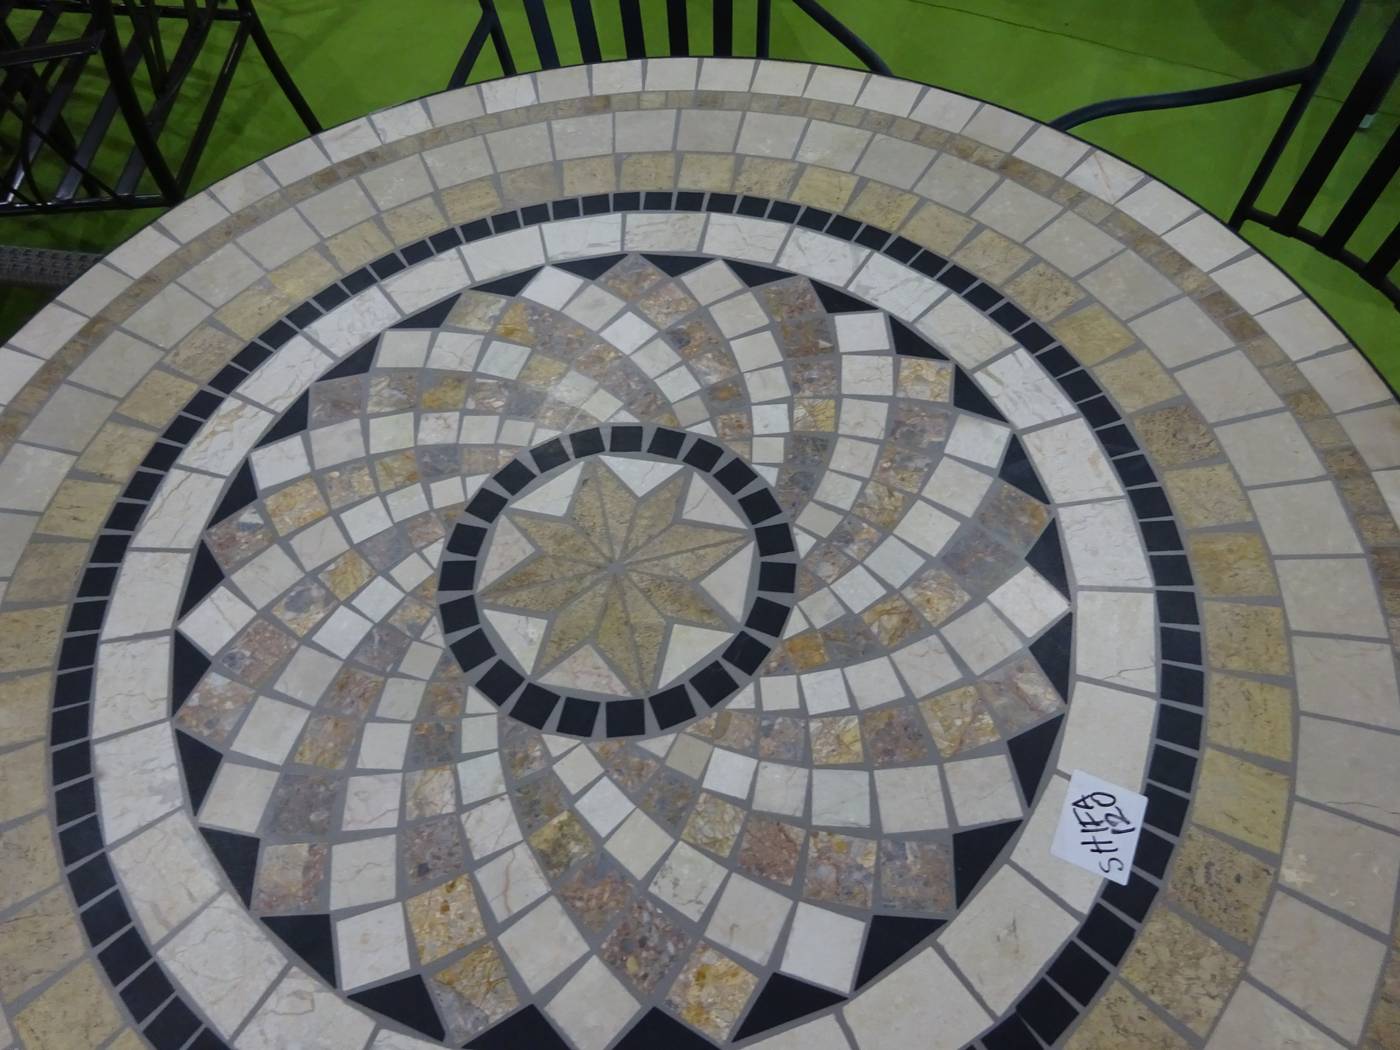 Conjunto Mosaico Shifa 120-6 - Conjunto de forja color gris: 1 mesa redonda con panel mosaico de marmol + 6 sillones de forja + 6 cojines.